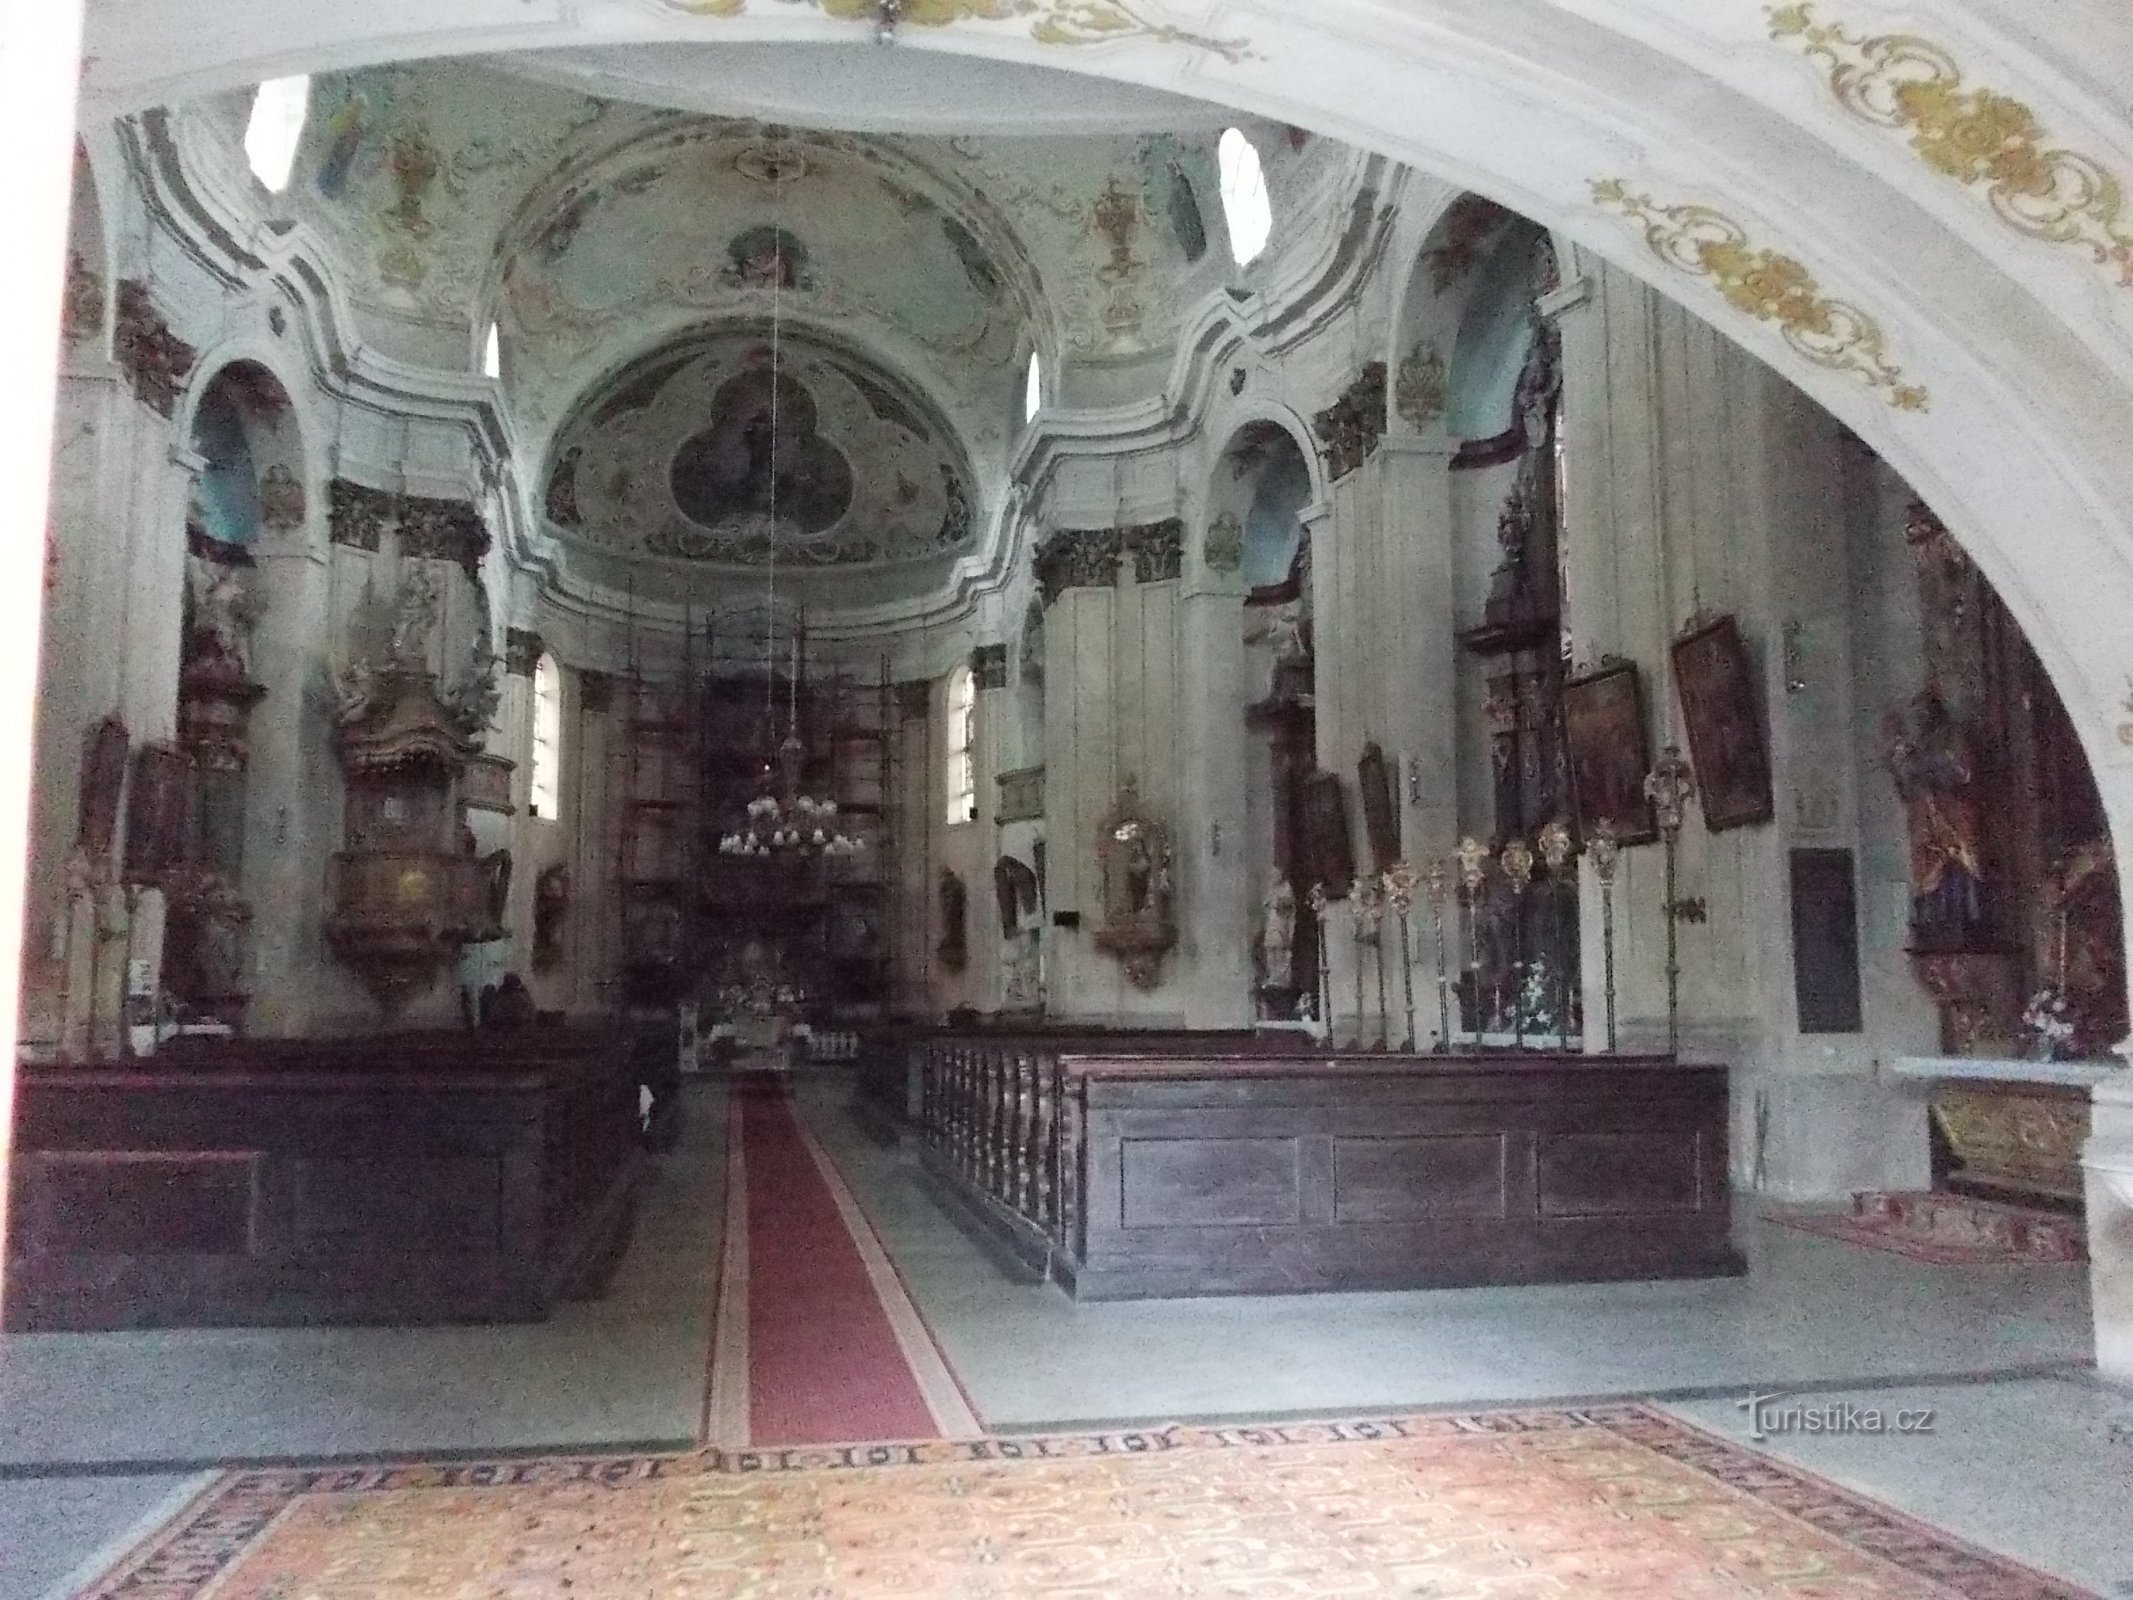 interieur van de kerk